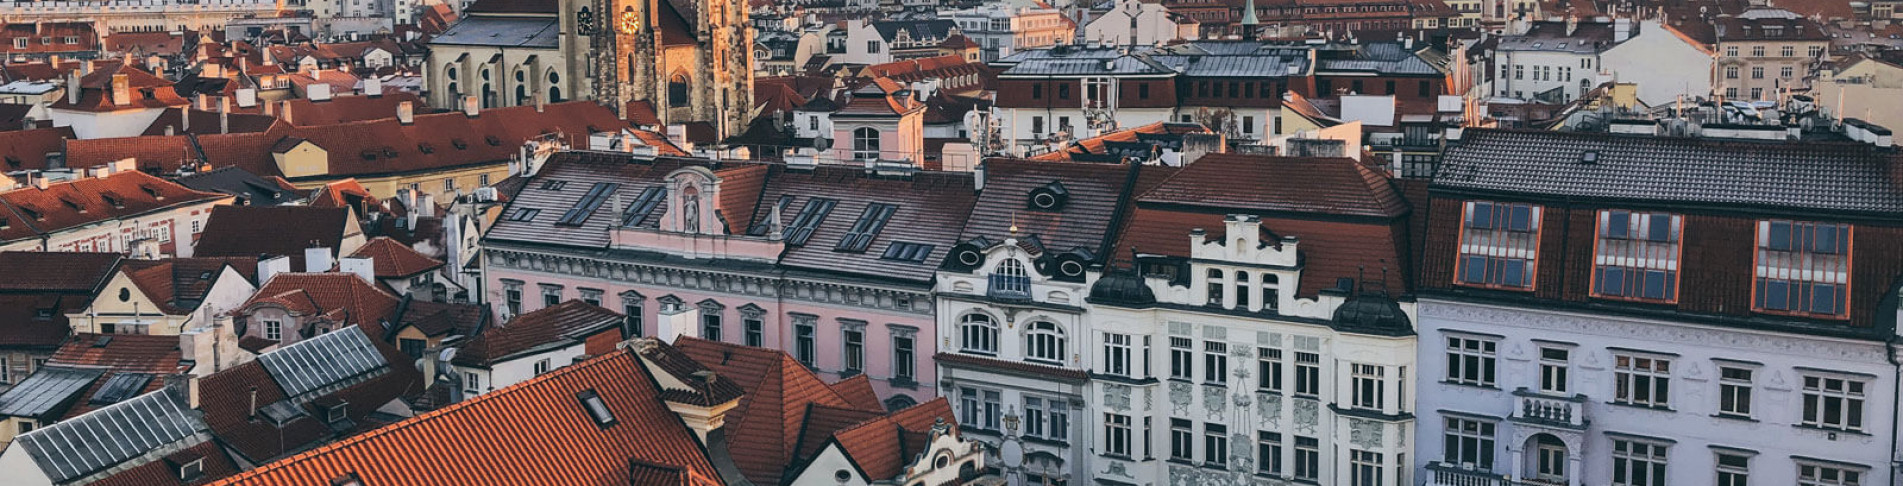 Über den Dächern von Prag